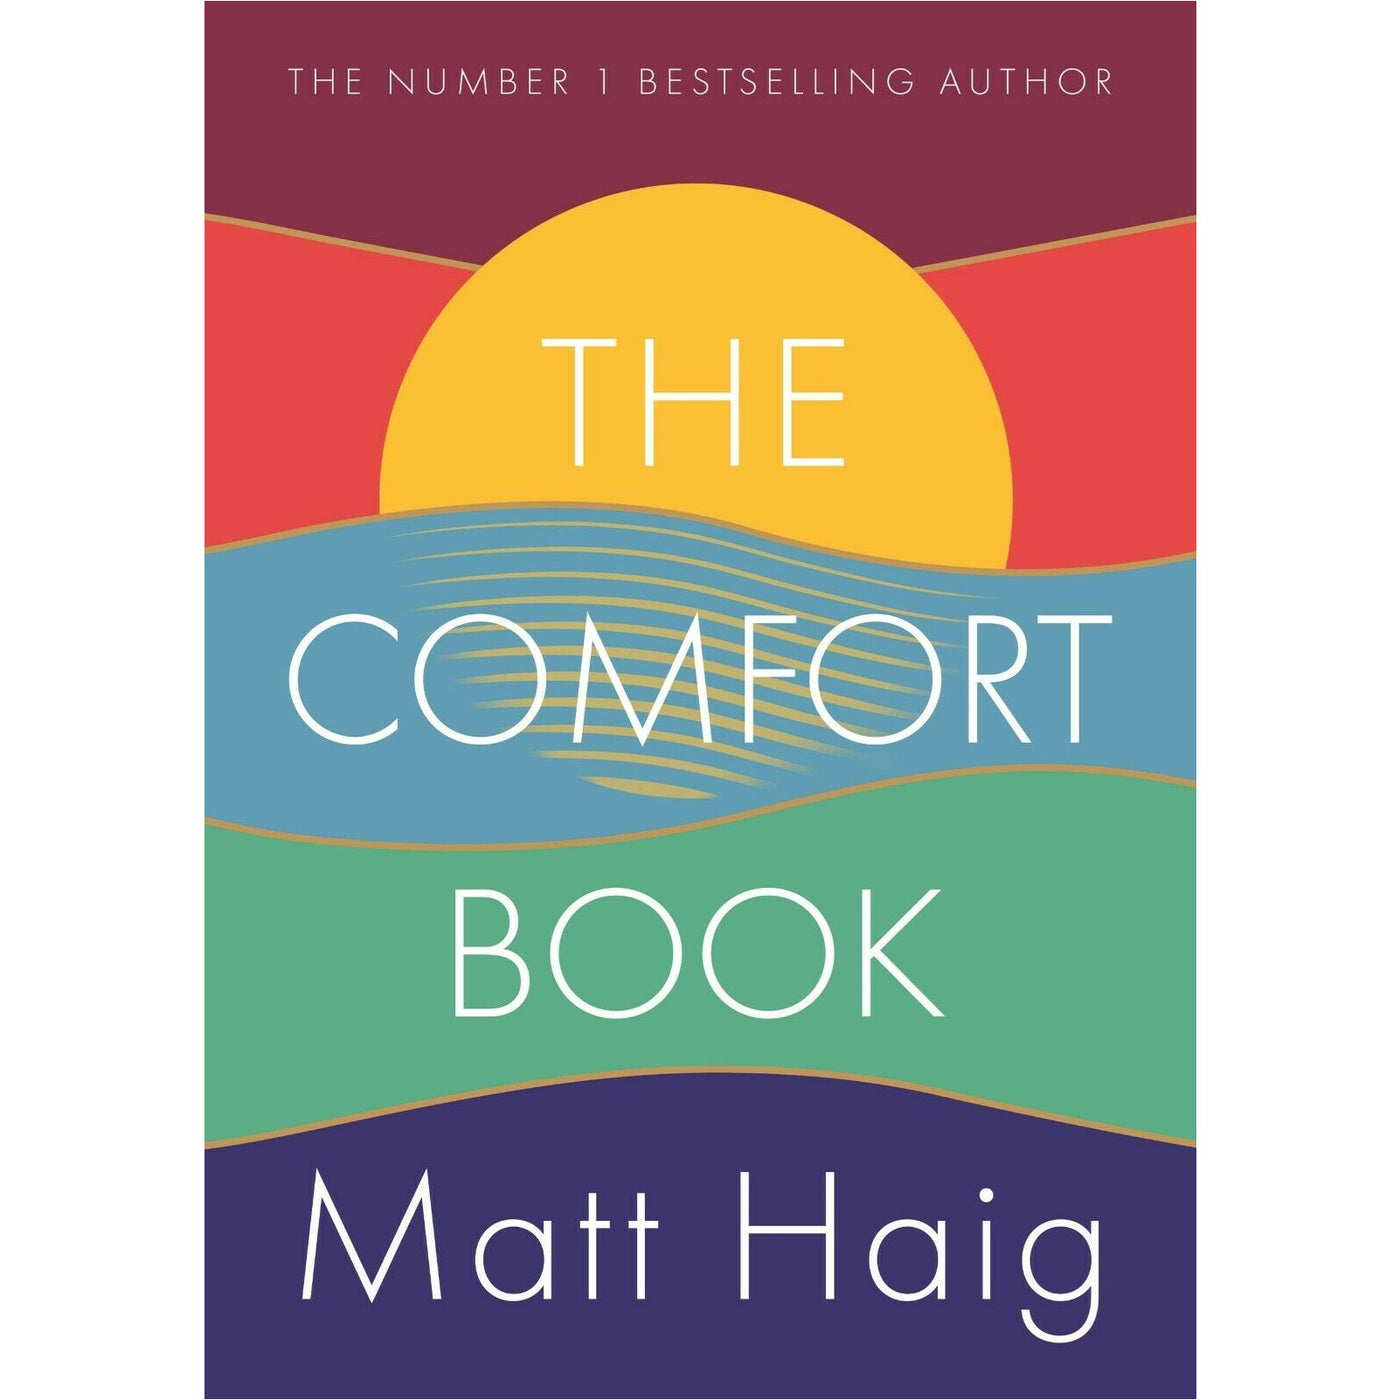 matt haig the comfort book